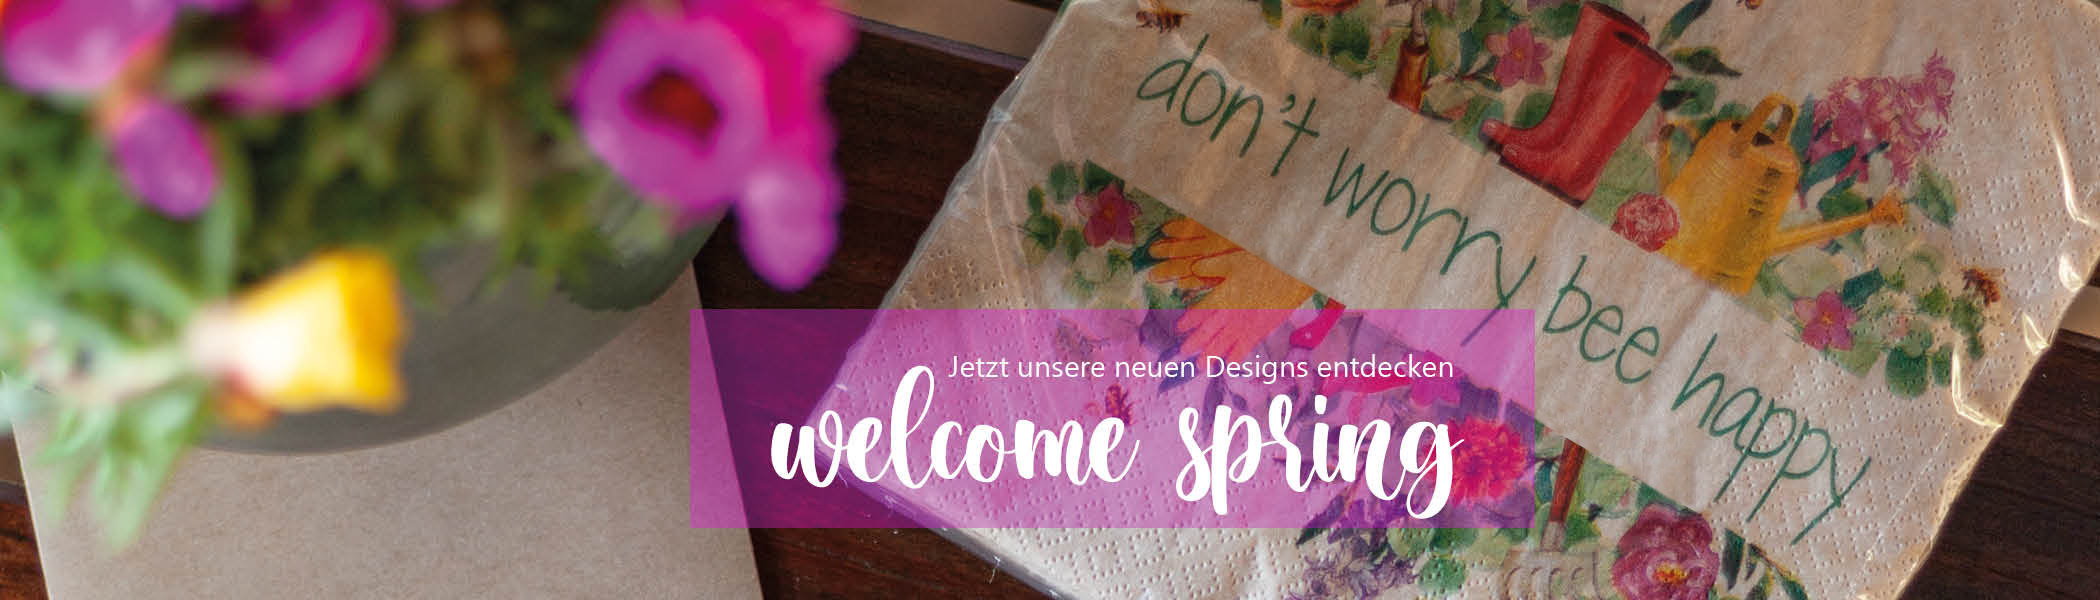 Banner für neue Frühlingsdesign